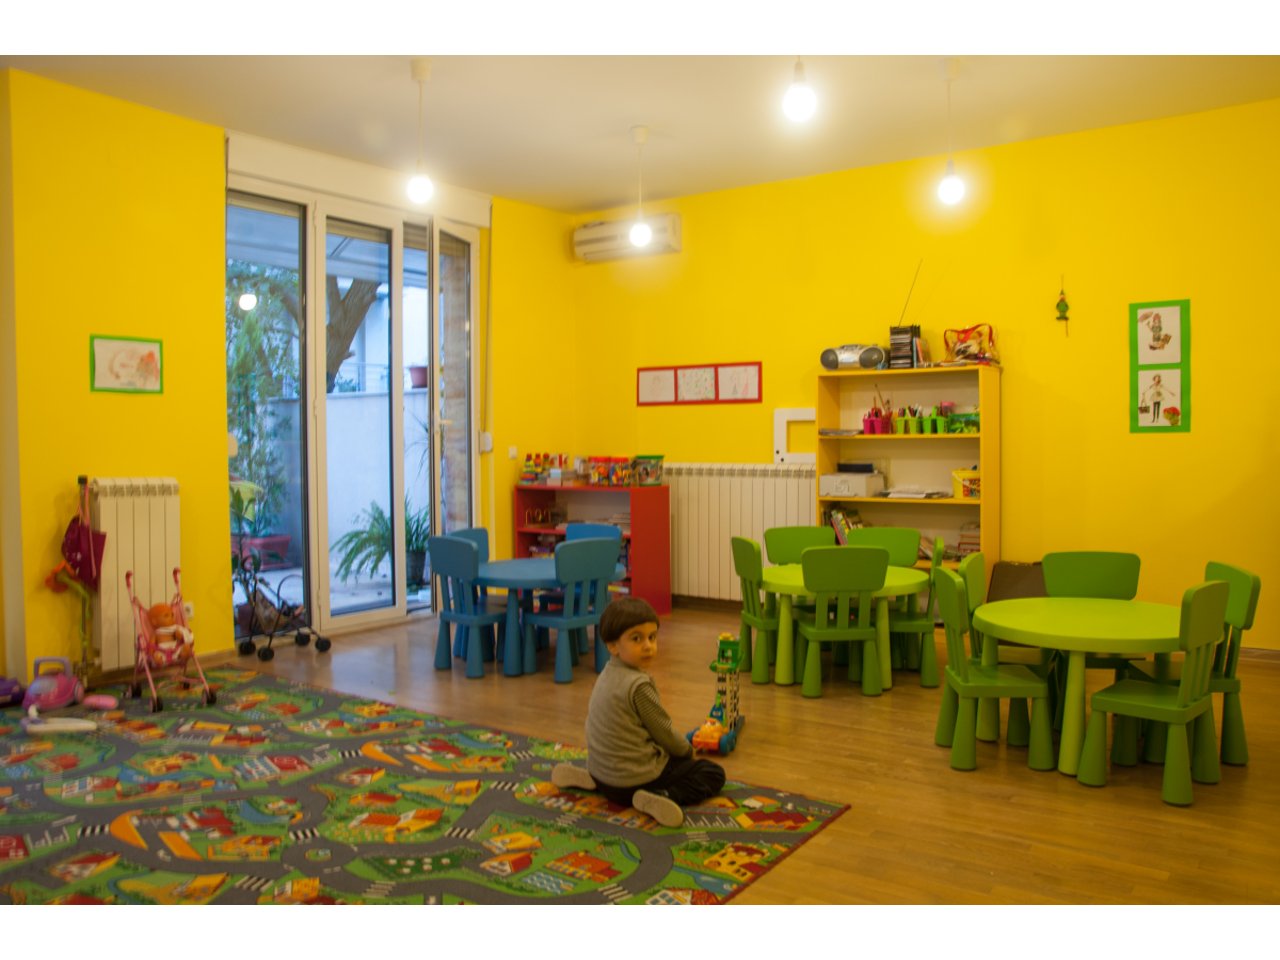 KINDERGARTEN PLAVO MACE Kindergartens Belgrade - Photo 4